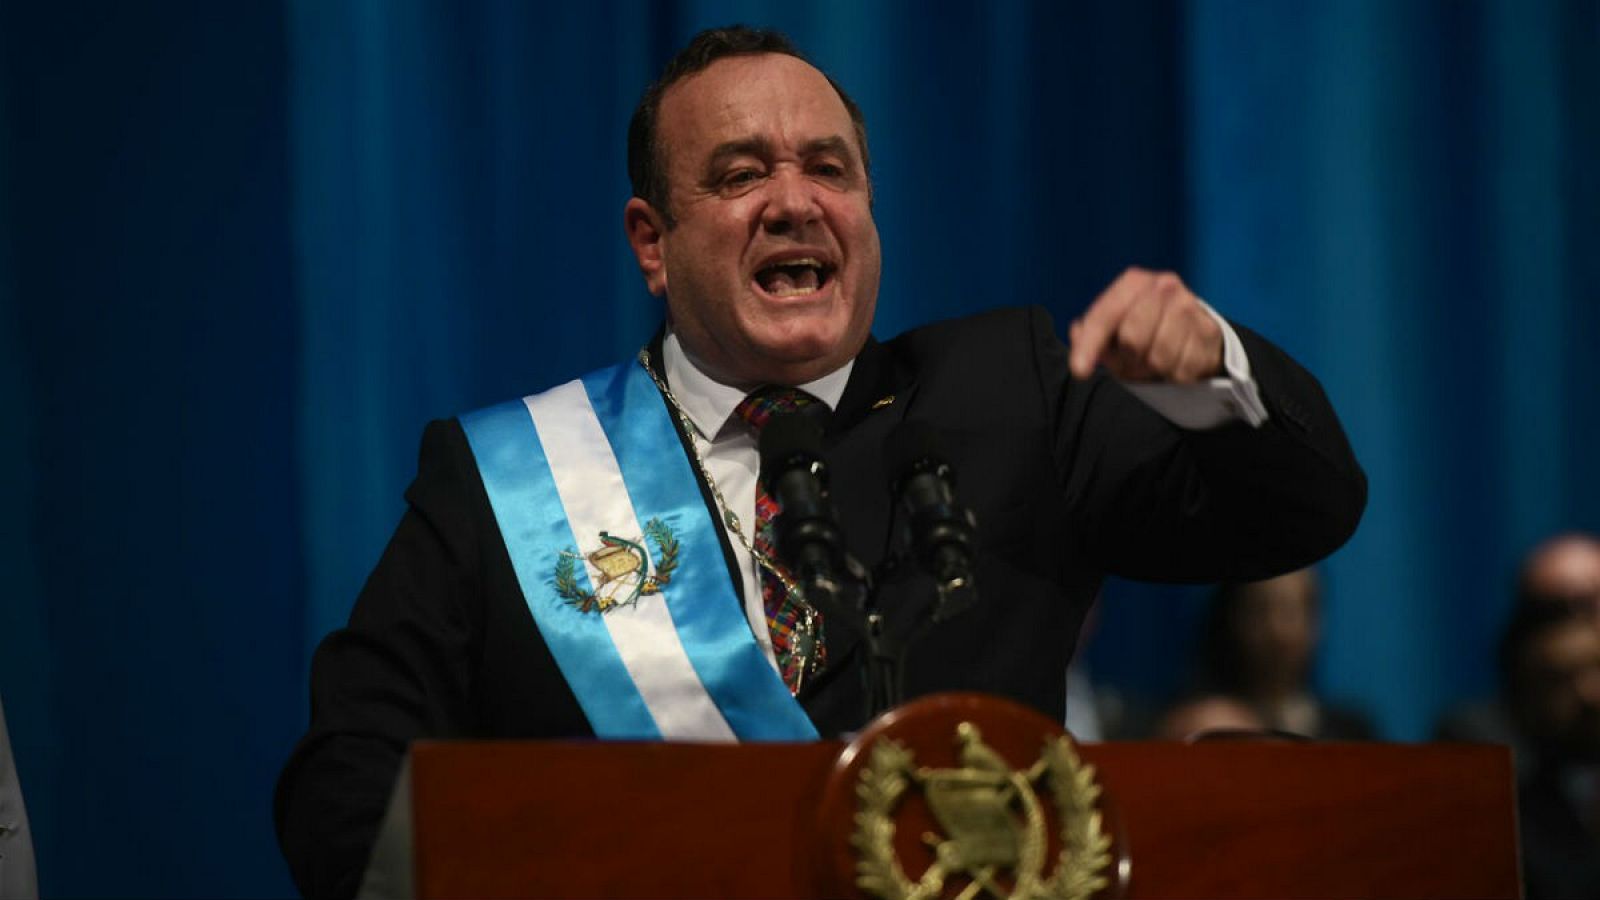 El nuevo mandatario guatemalteco ha dado su discurso como líder tras ser investido en el teatro nacional de Guatemala.